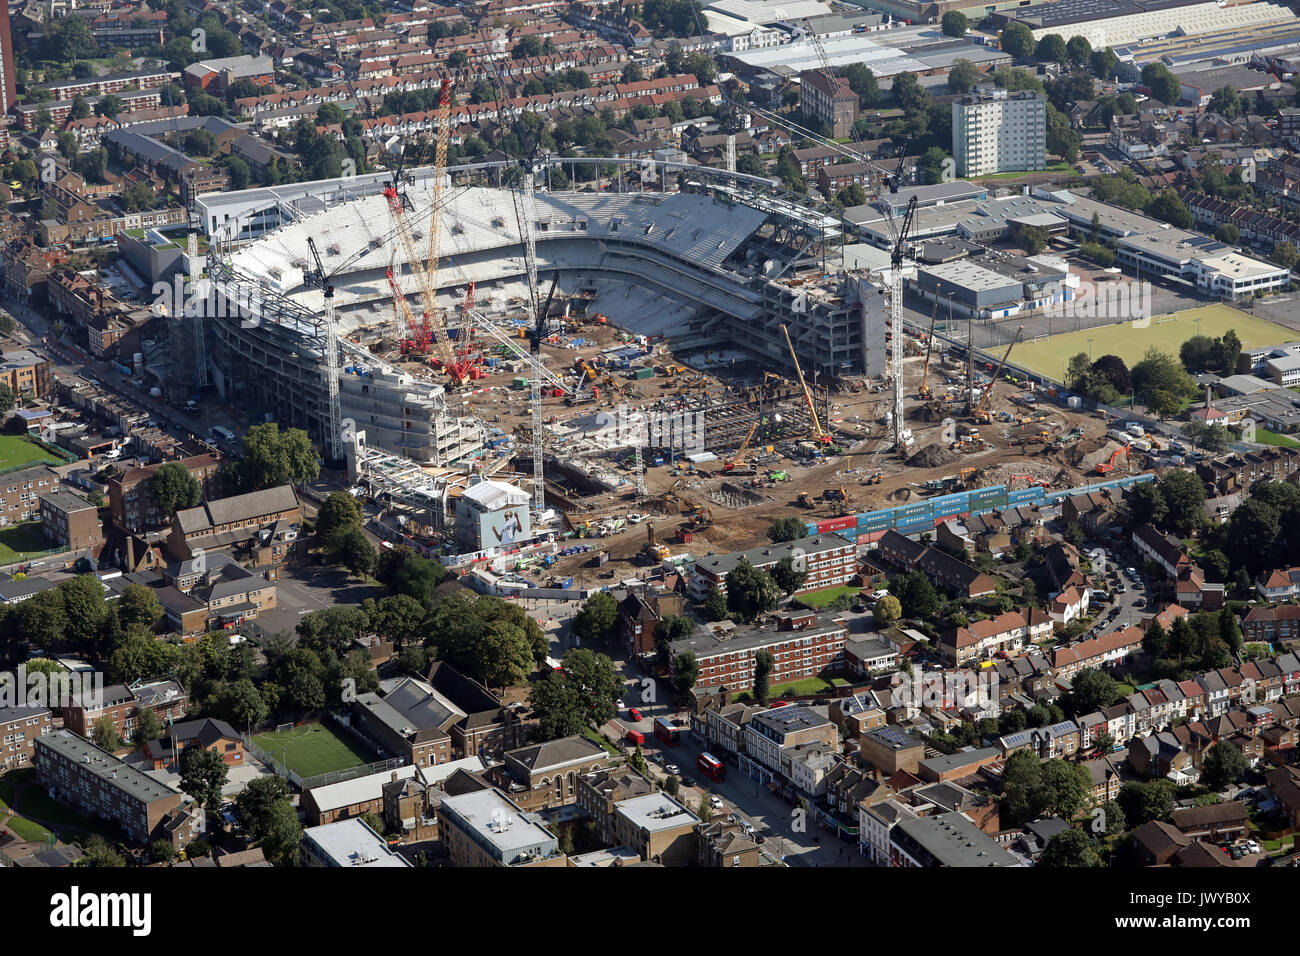 Vista aerea dello stadio Tottenham Hotspur in costruzione, Londra, Regno Unito Foto Stock